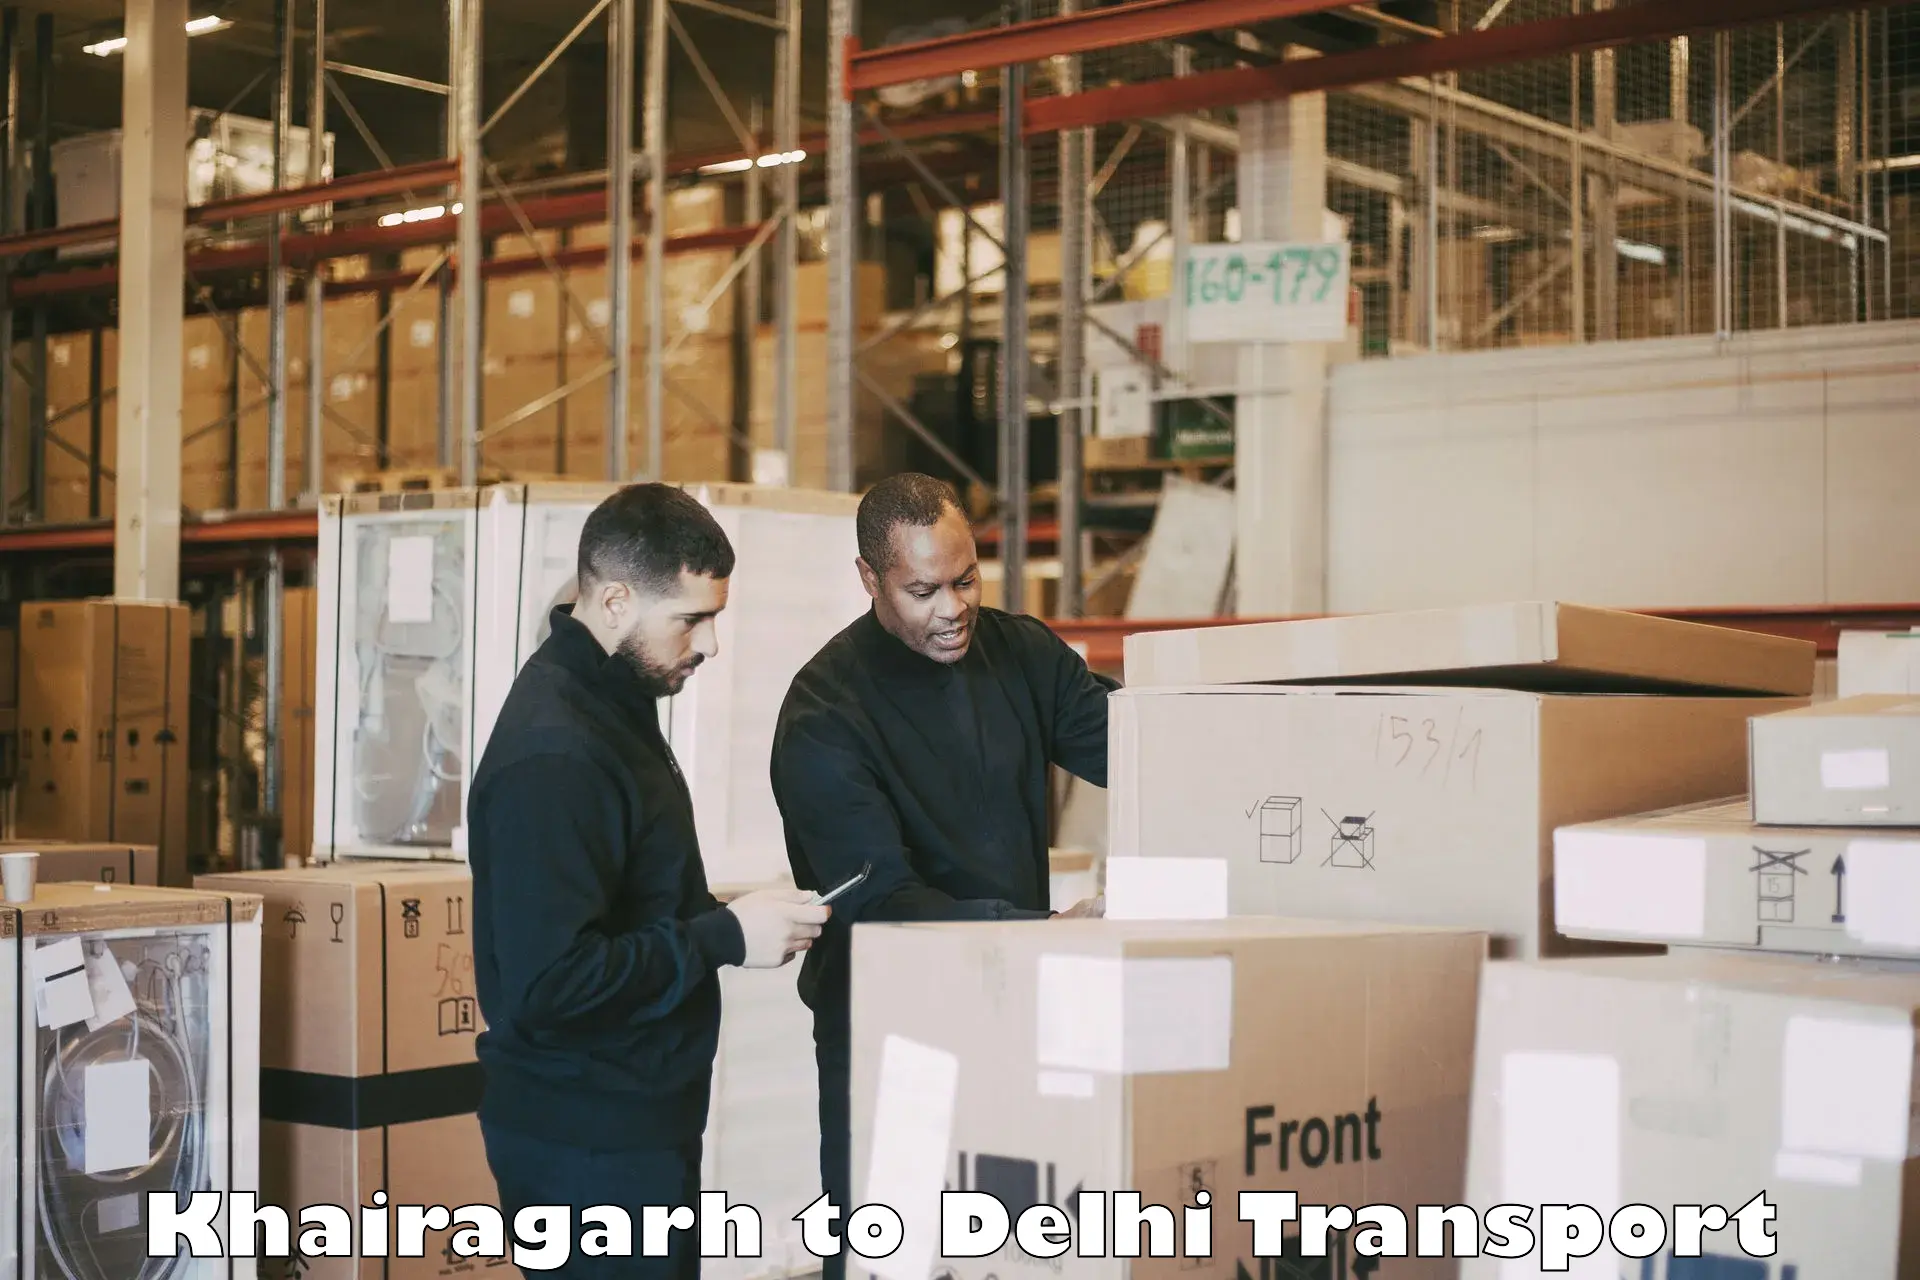 Daily transport service Khairagarh to Sarojini Nagar